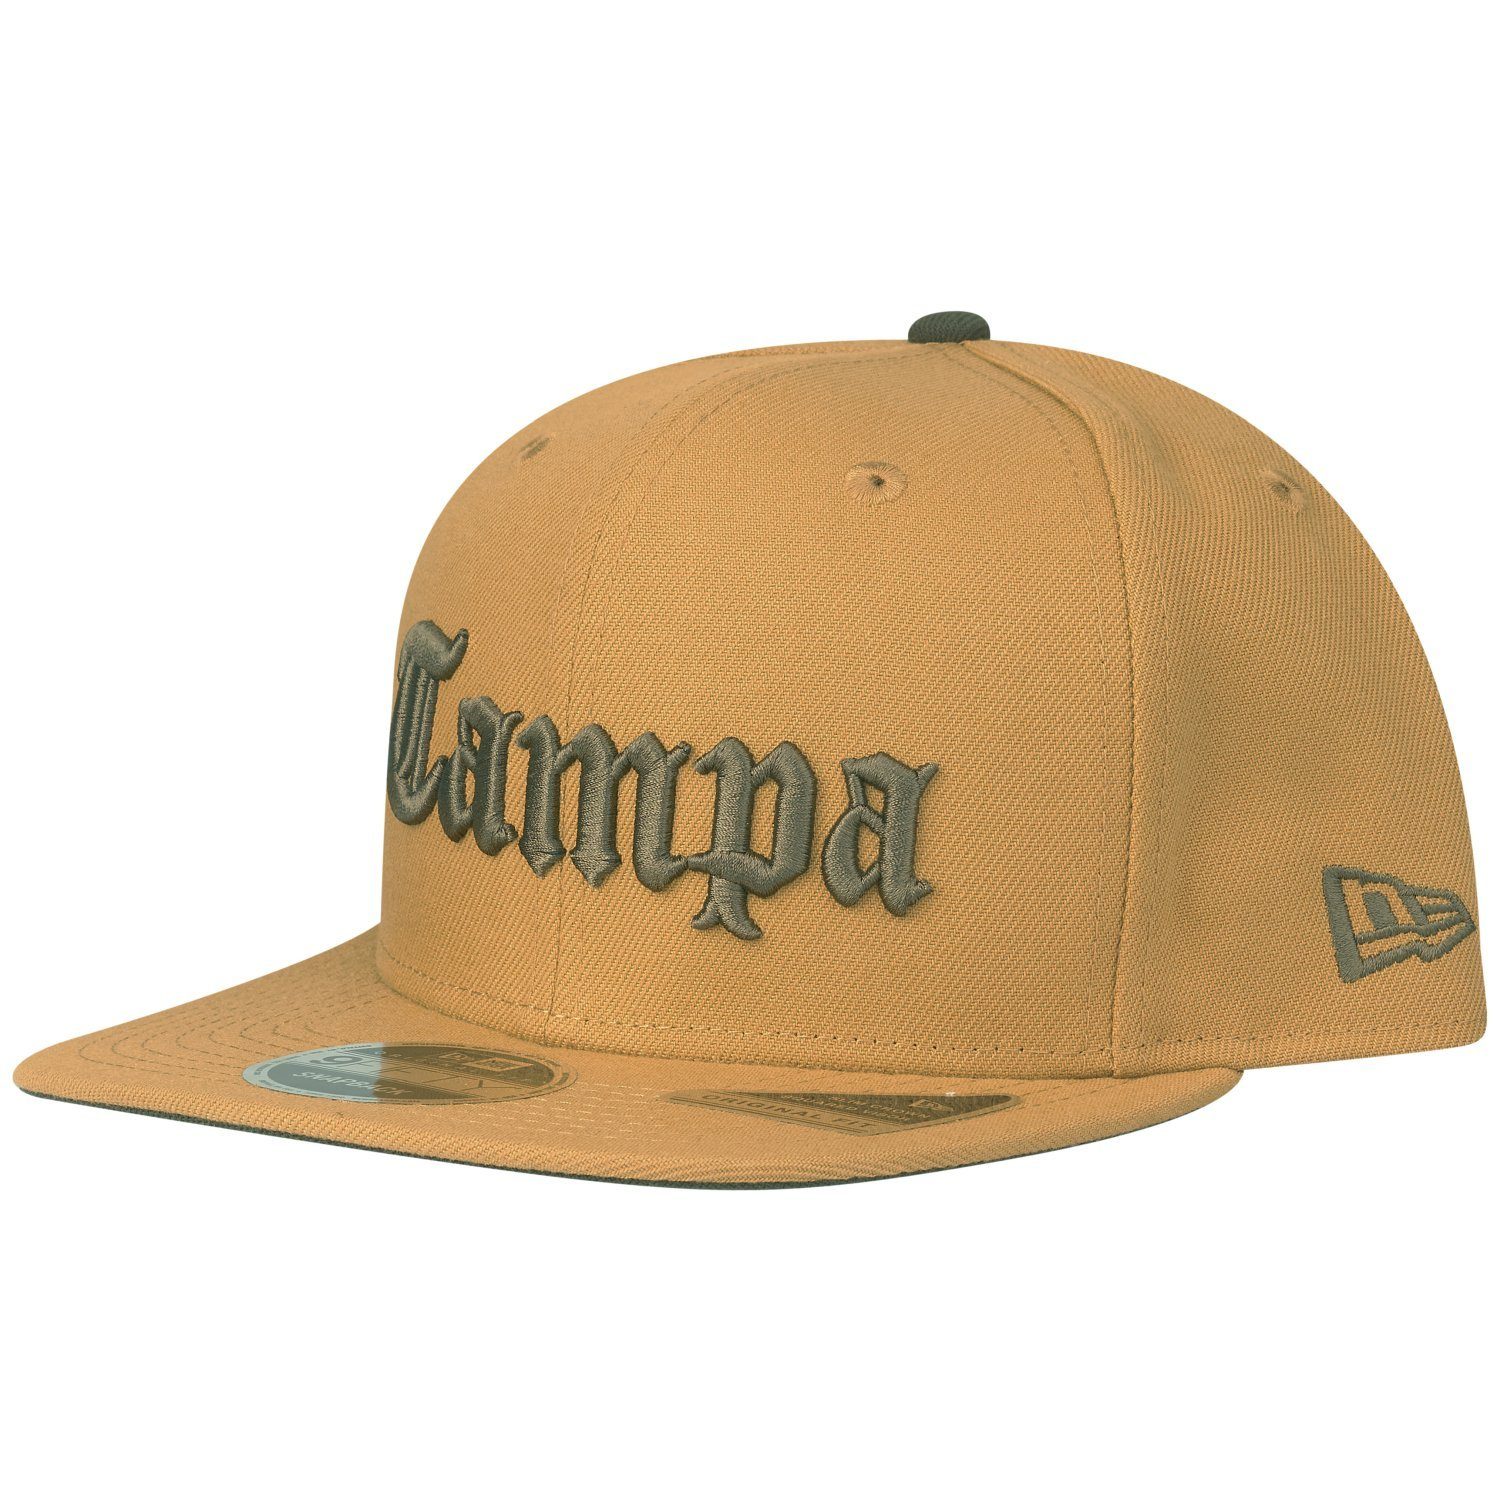 New Era Snapback Cap OriginalFit panama TAMPA FLY